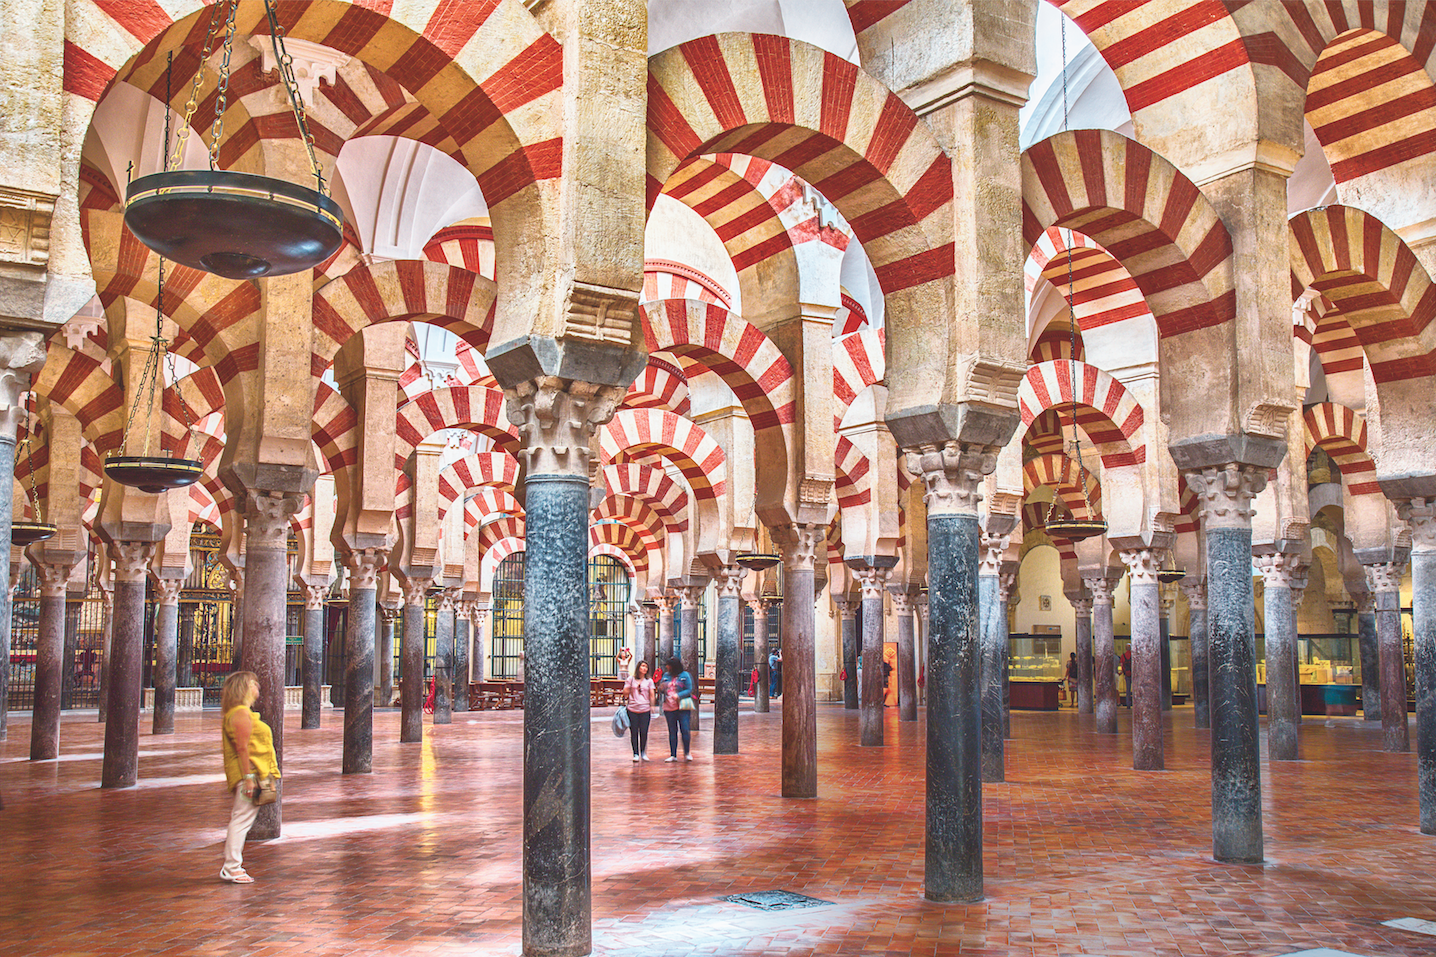 Córdoba: Steine des Anstoßes: Wo über Jahrzehnte Muslime und Christen nebeneinander beteten, entstand ab 786 diese Moschee. Ab 1489 wurde sie teils zur gotischen Kathedrale umgebaut. Bis heute ringt Córdoba um die Frage: Wem gehört das Juwel maurischer Baukunst?